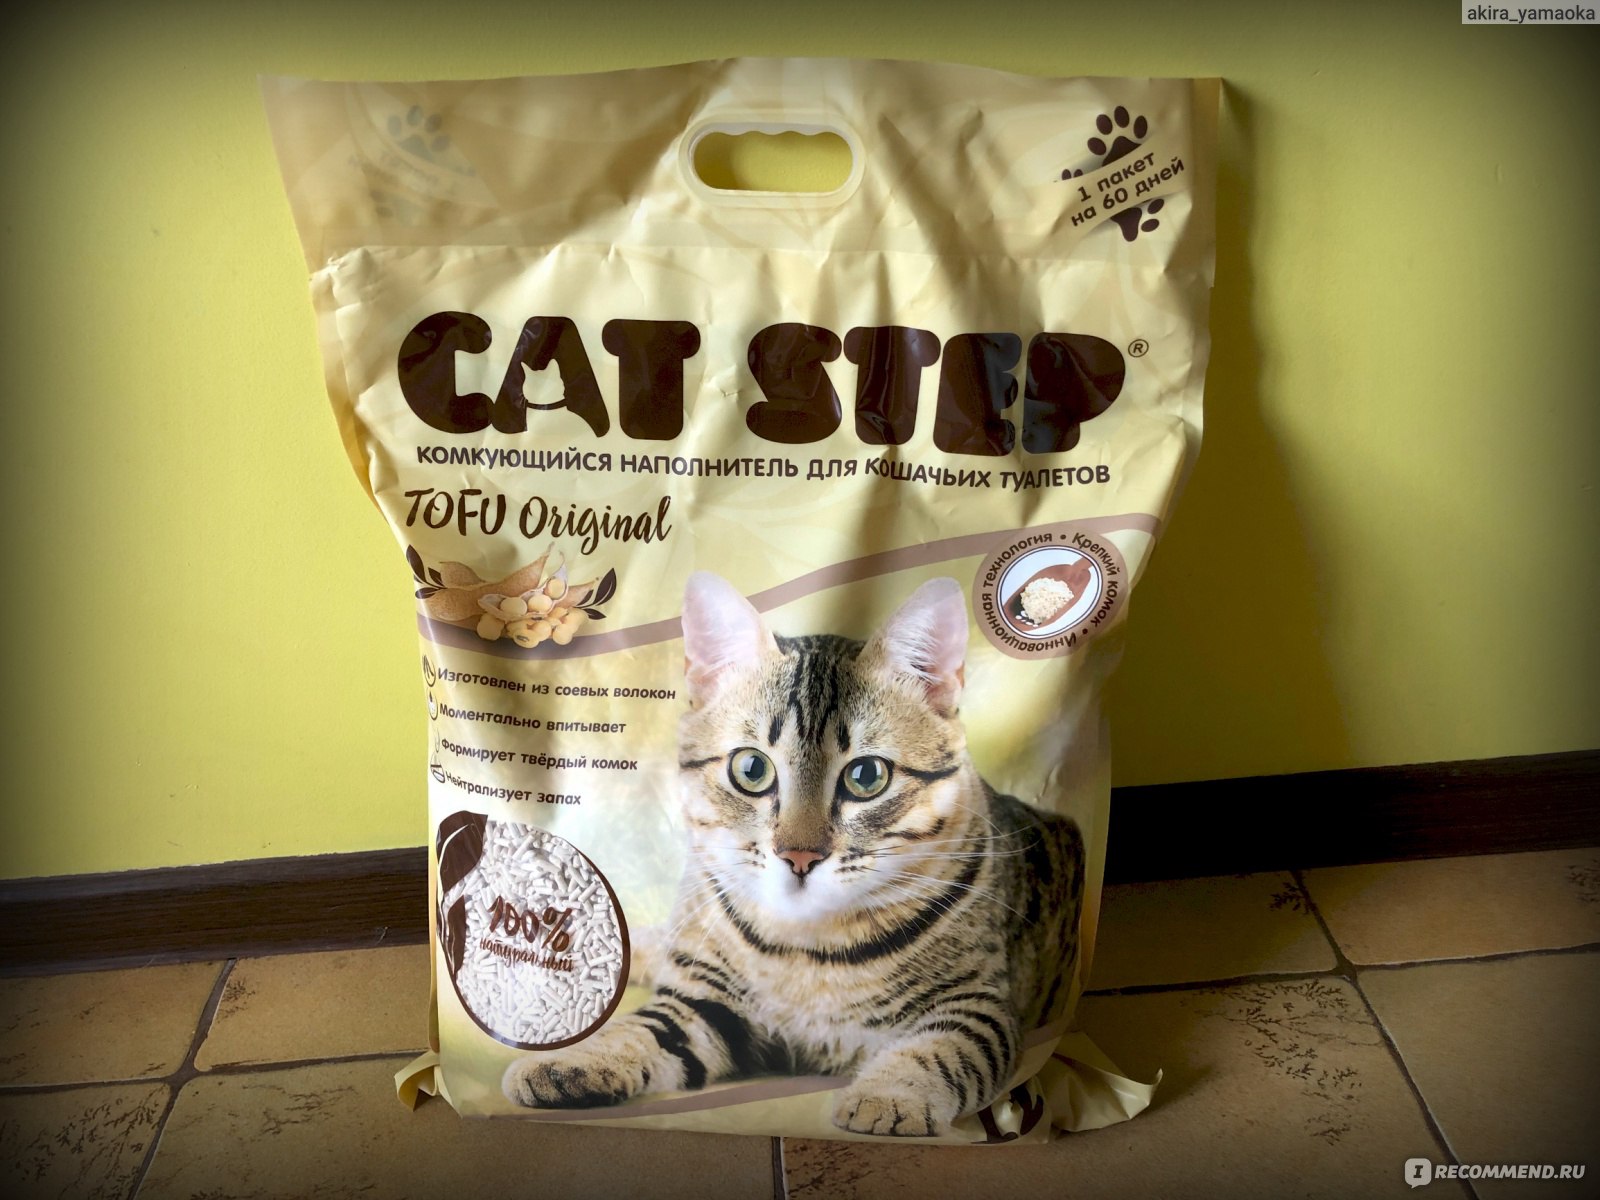 Кот ест туалетный наполнитель — как найти причину и отучить